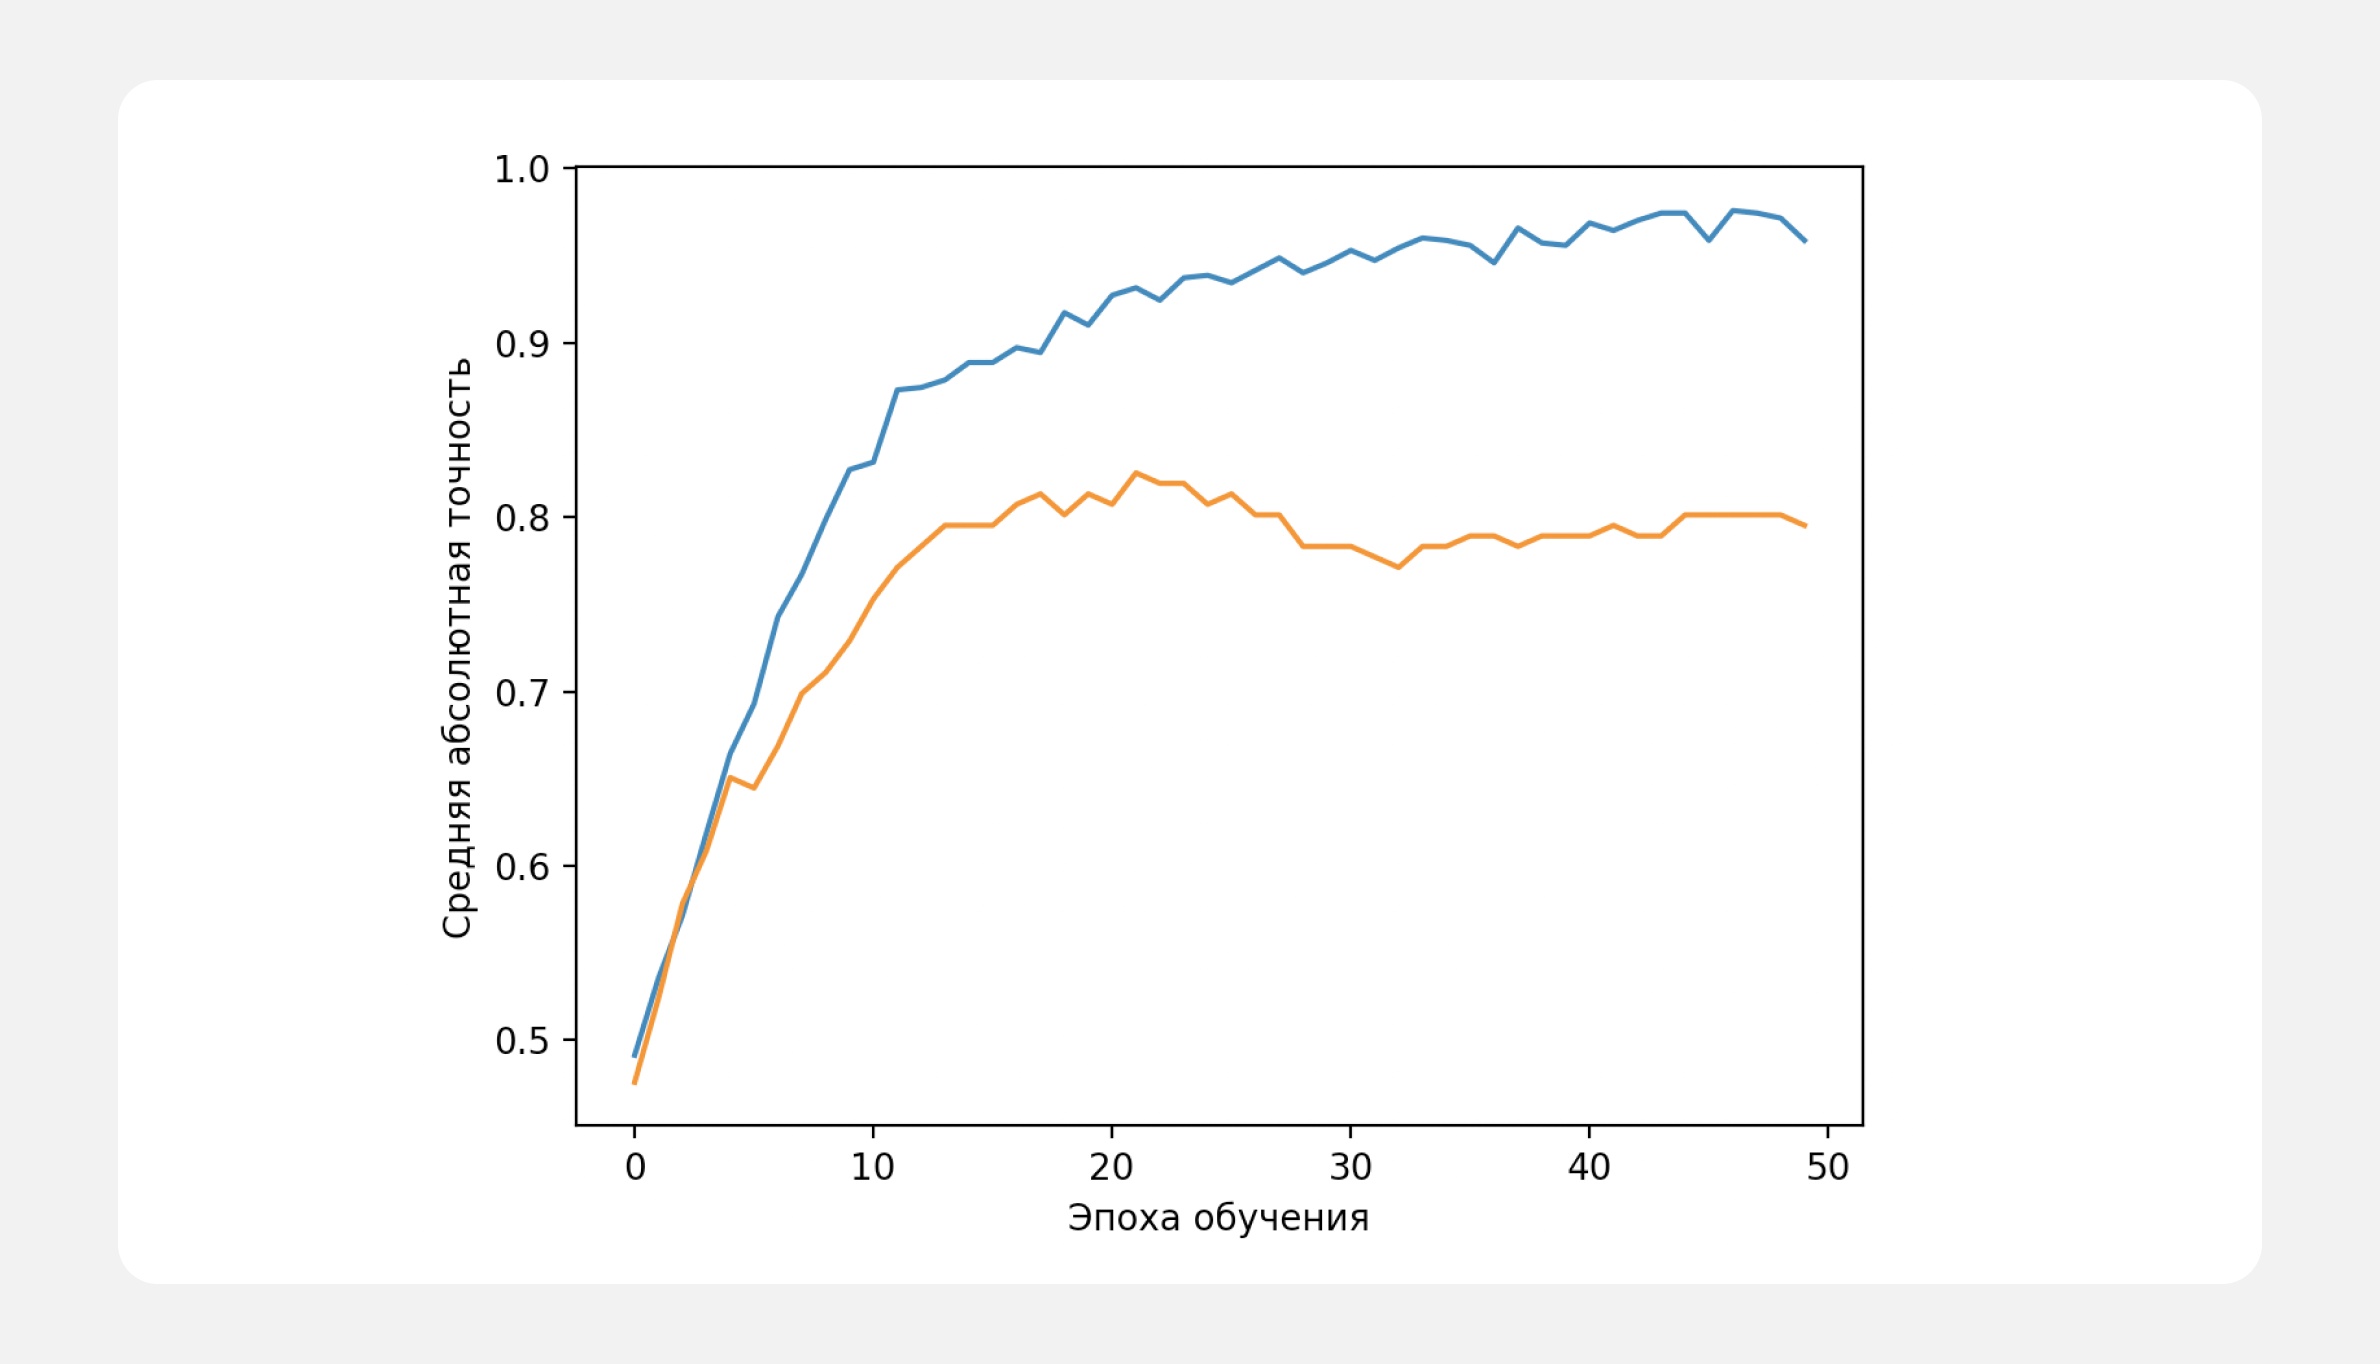 Синий график — точность предсказаний на обучающей выборке, оранжевый — точность предсказаний на проверочной